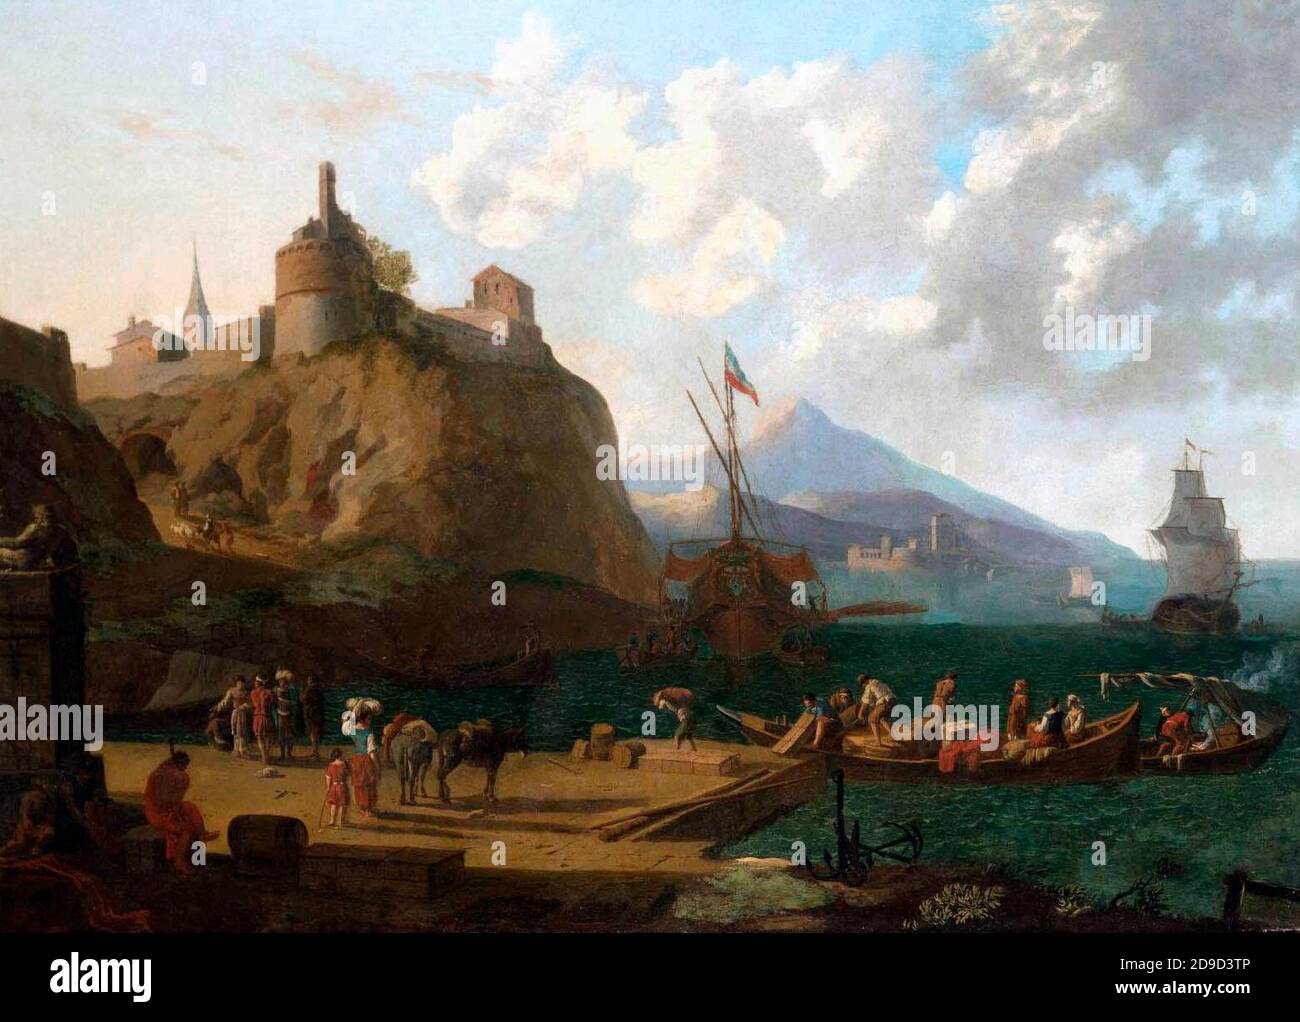 Une scène de port méditerranéen avec de nombreuses figures sur une que sous un fort - UNE scène de port méditerranéen, attribuée à Adriaen van der Kabel, 1600s Banque D'Images